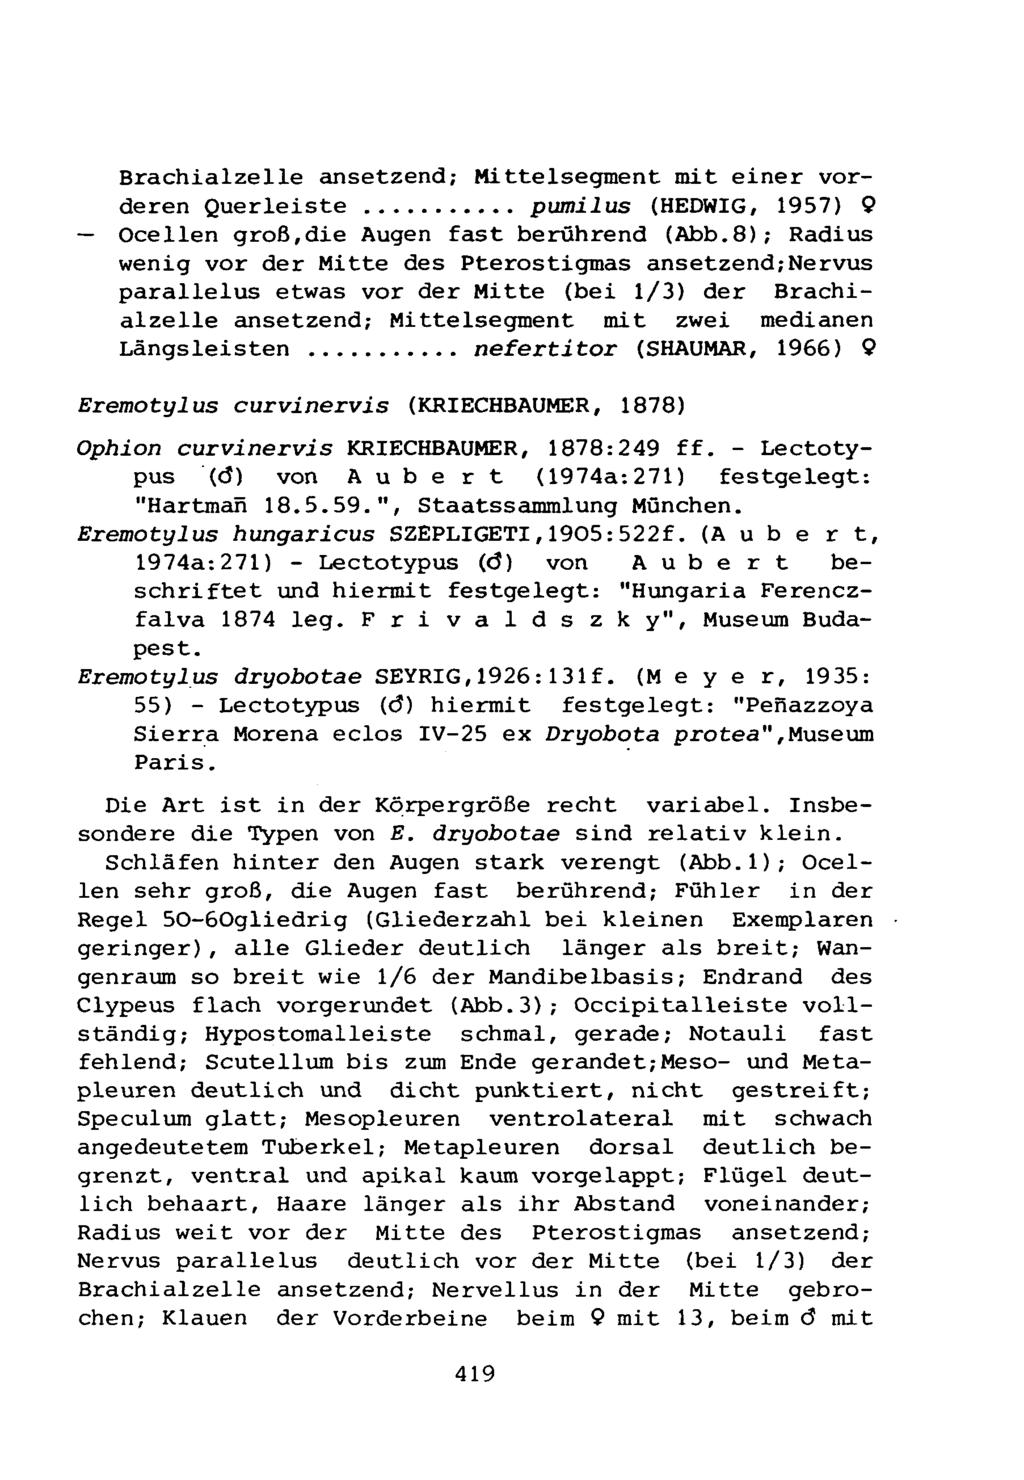 Brachialzelle ansetzend; Mittelsegment mit einer vorderen Querleiste pumilus (HEDWIG, 1957) 9 Ocellen groß,die Augen fast berührend (Abb.